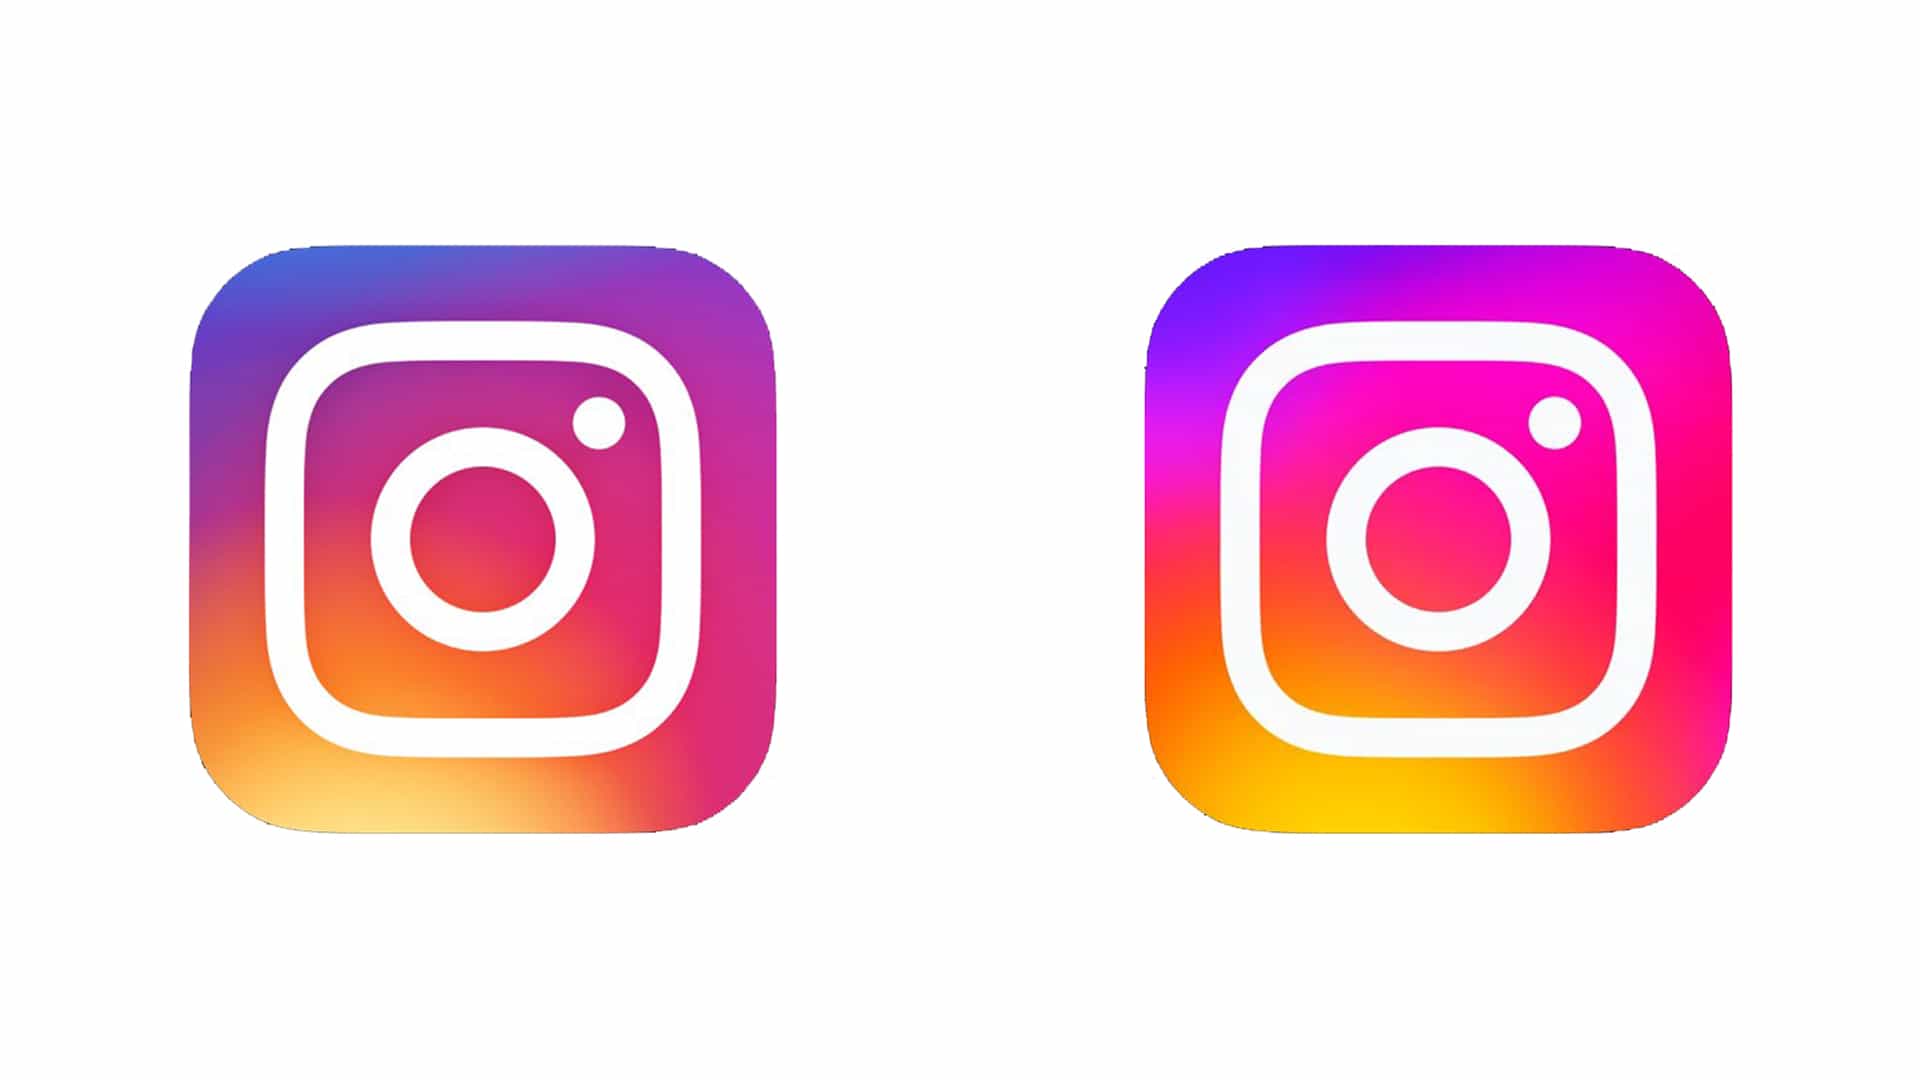 El nuevo logotipo y la fuente de Instagram están dividiendo Internet